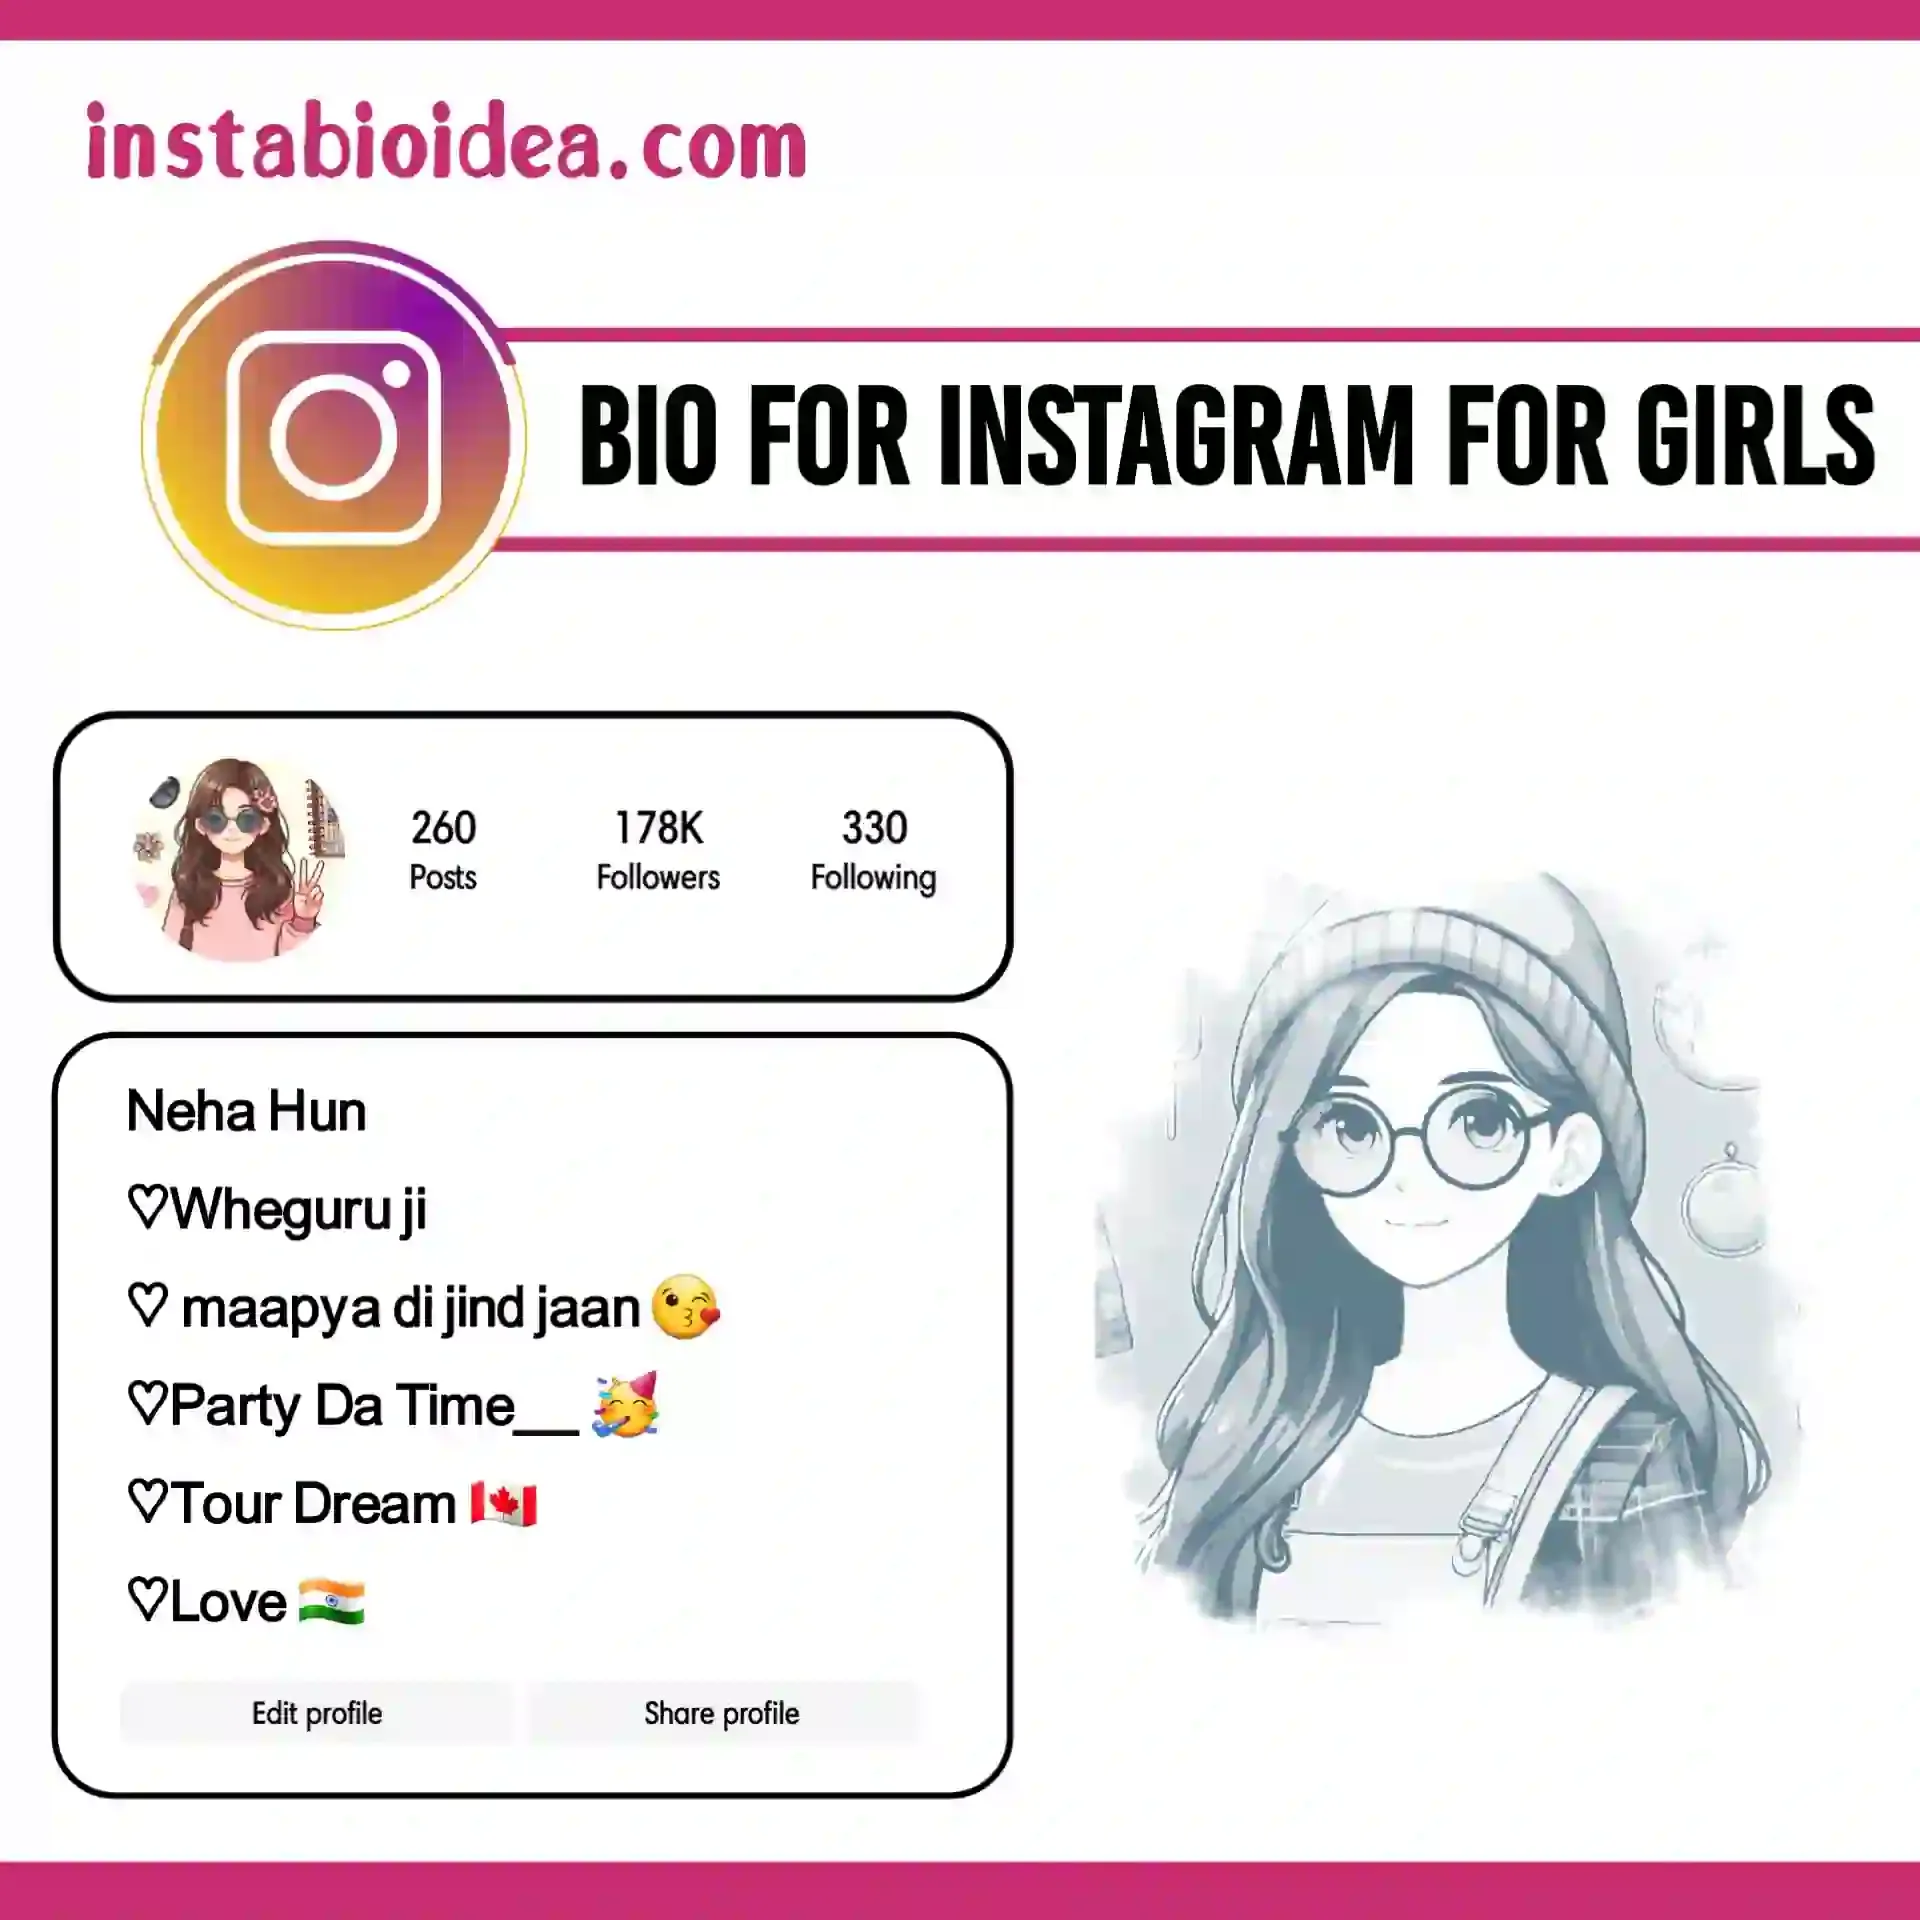 bio for instagram for girls image